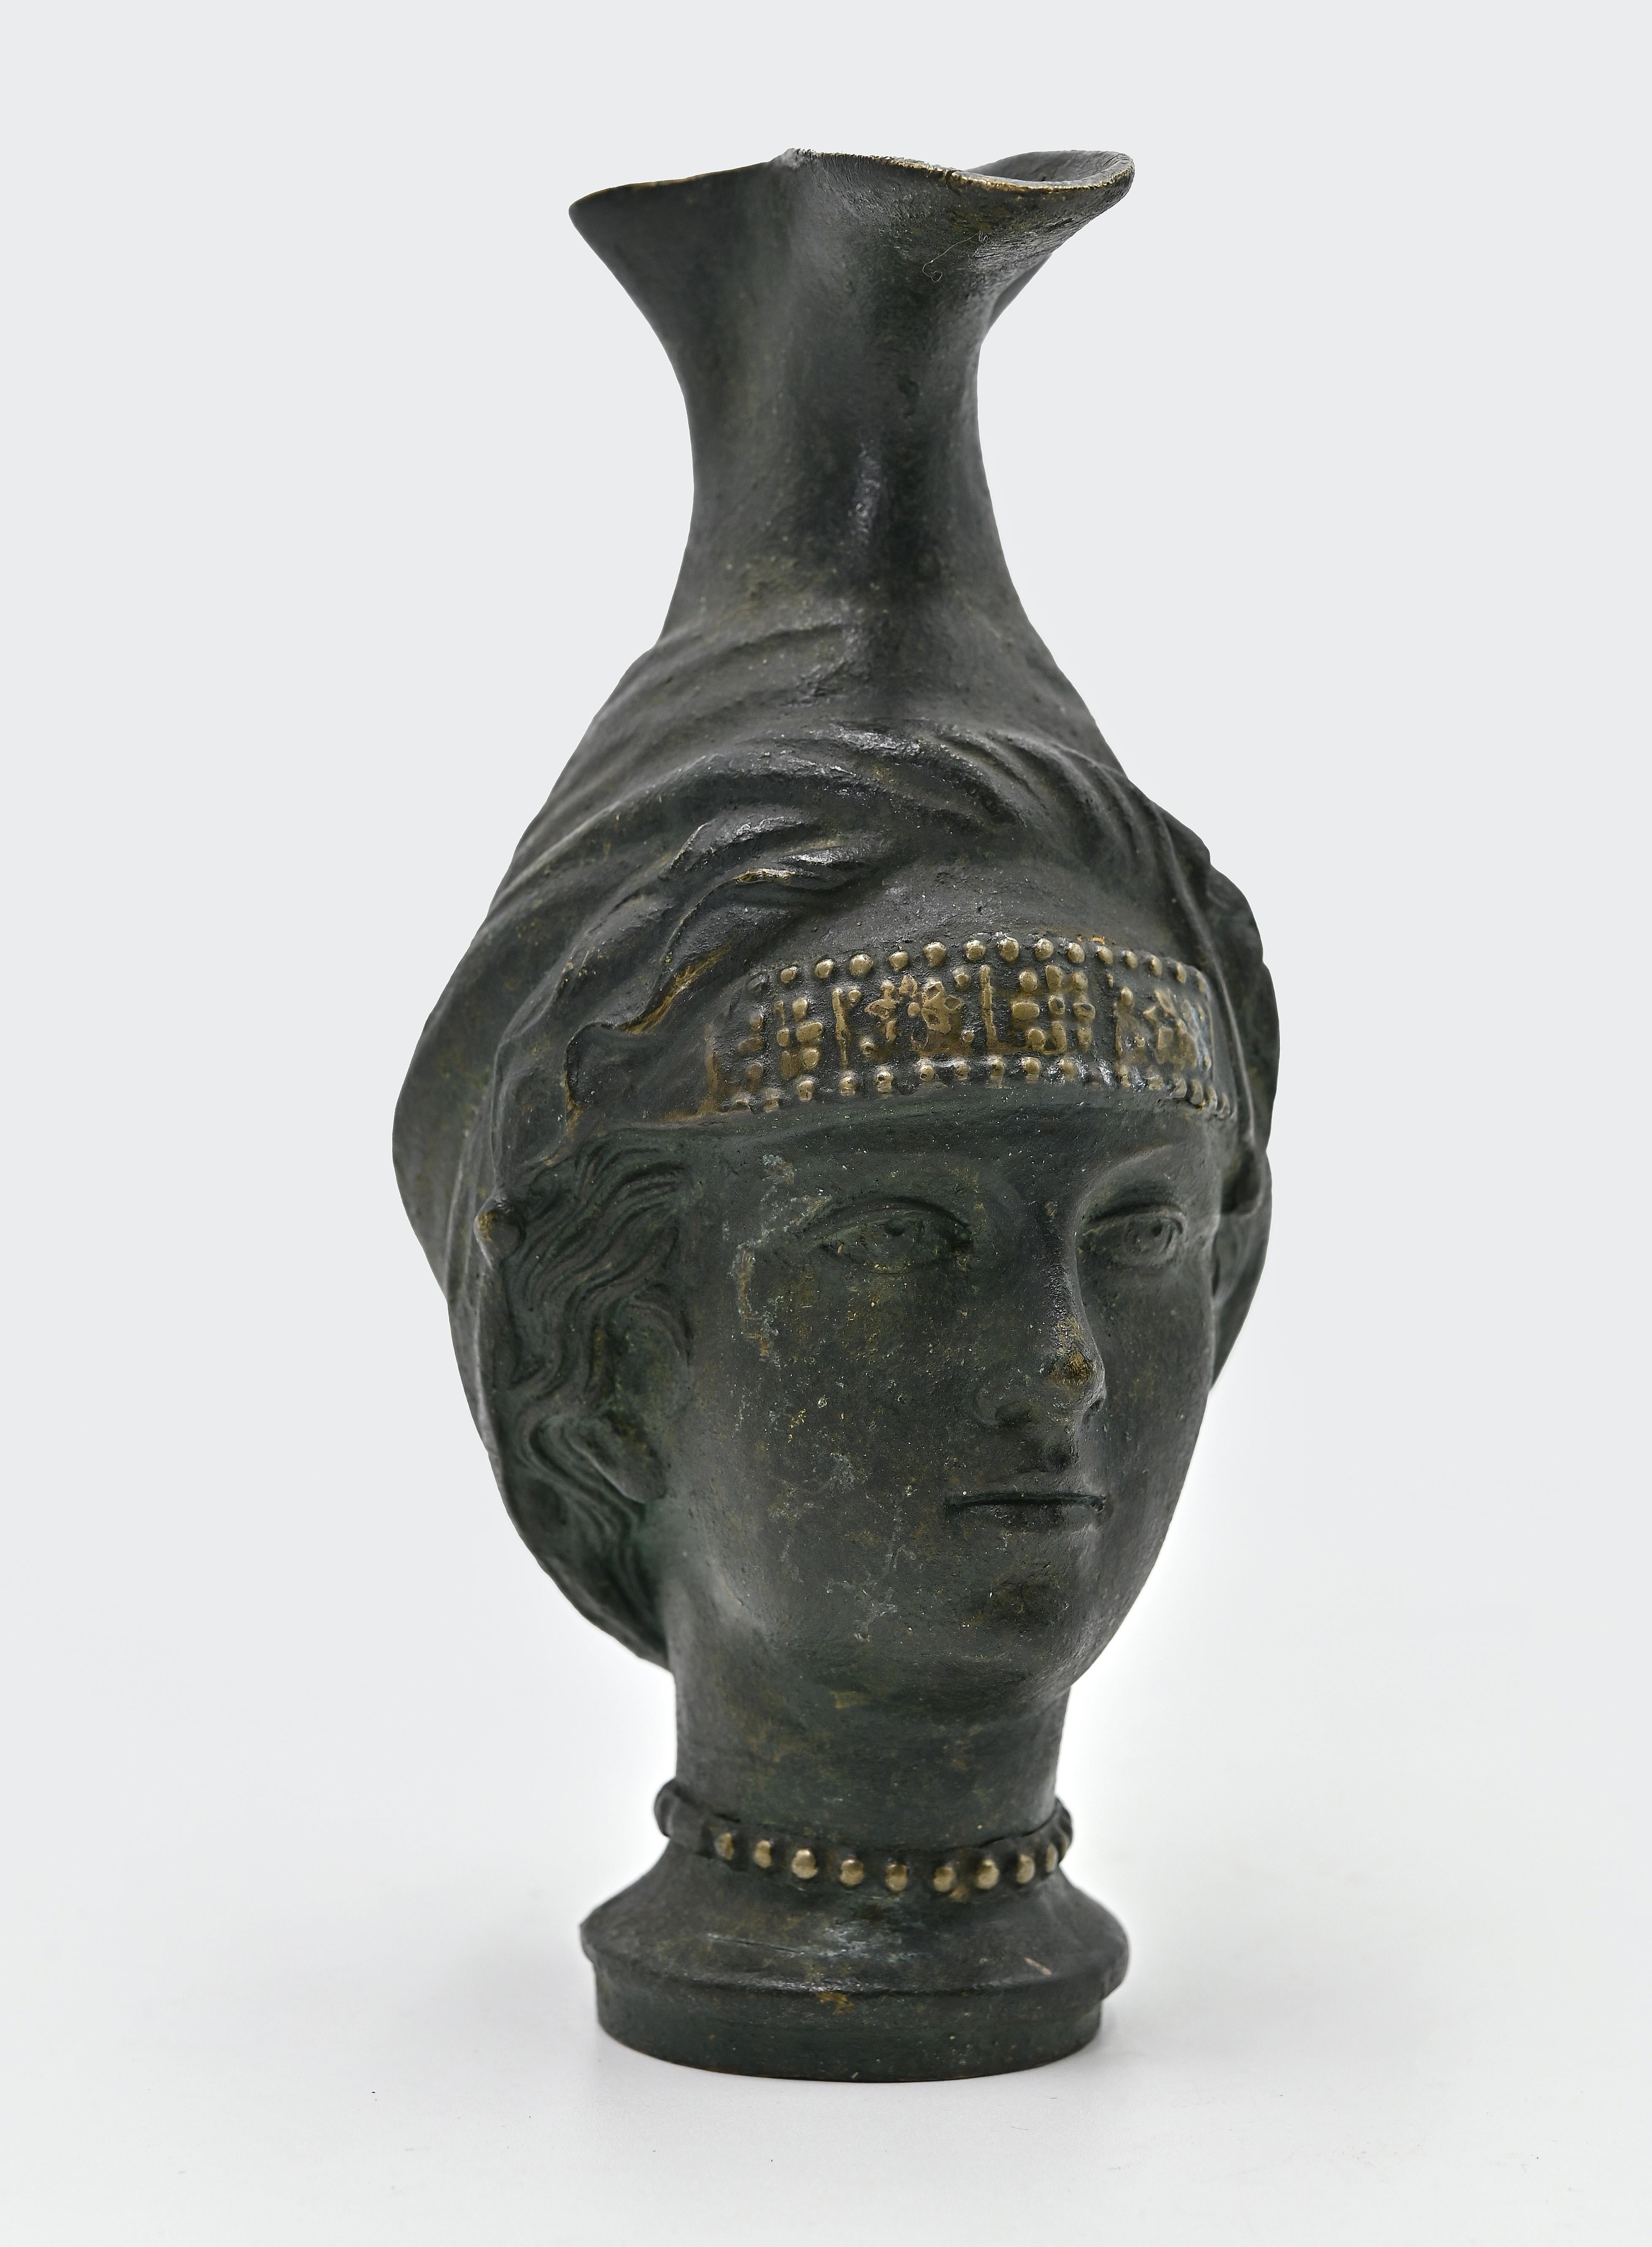 Der Bronzekrug ist ein Originalobjekt, das von einem anonymen Künstler zu Beginn des 20. Jahrhunderts geschaffen wurde.

Ein nach antiker Art gefertigter Krug in Form eines Frauenkopfes, mit Ausguss und rundem Boden.

Bronzeguss mit Grünspan.